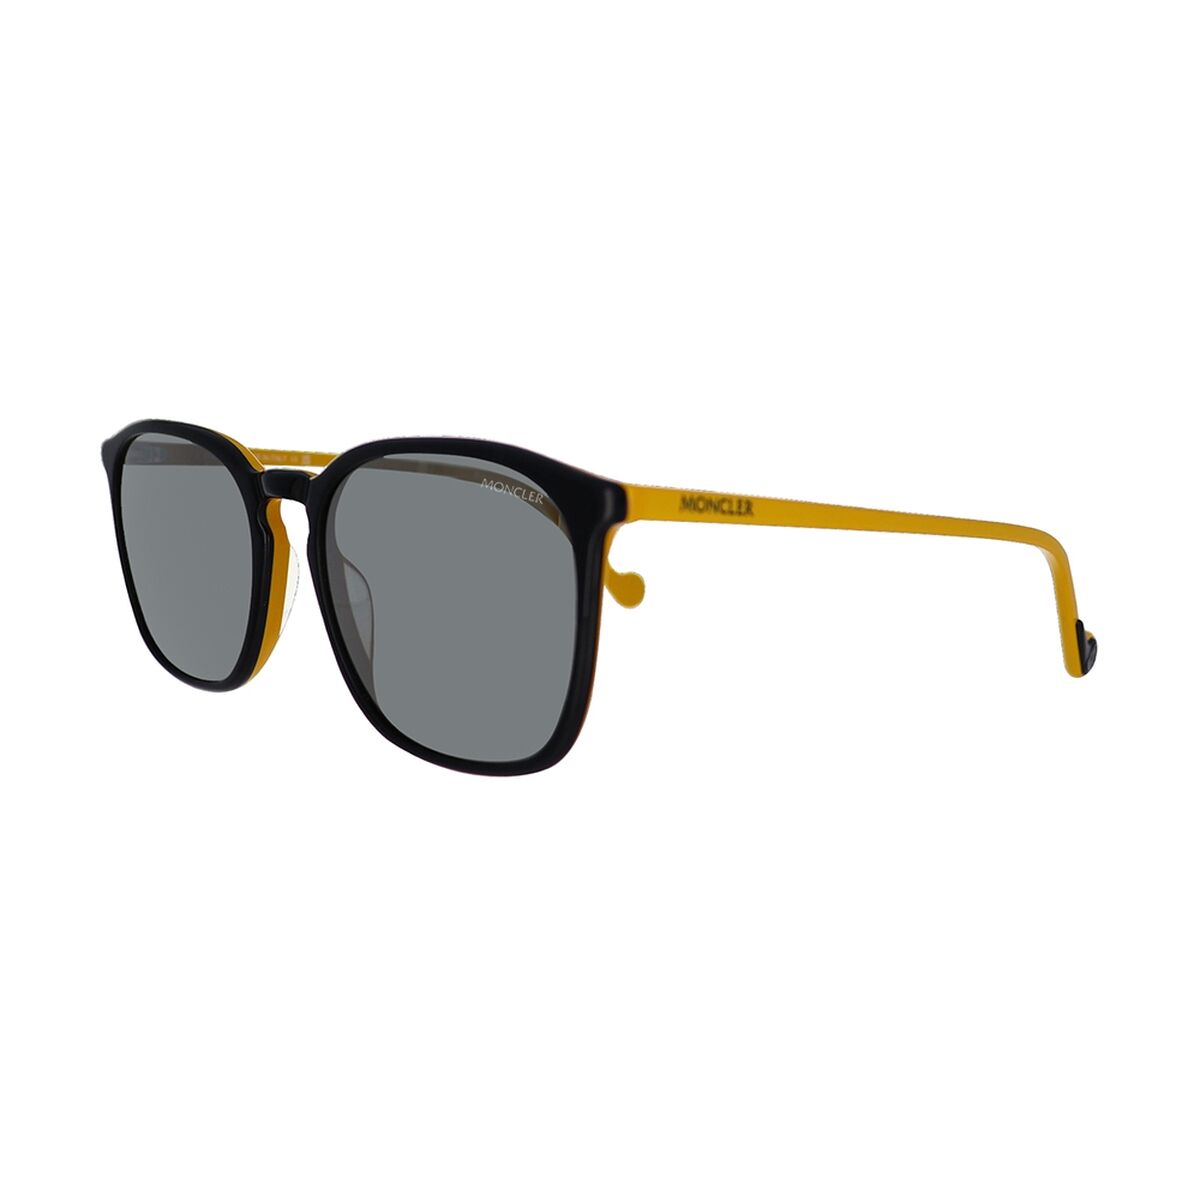 Kaufe Damensonnenbrille Moncler ML0150-05C-56 bei AWK Flagship um € 126.00